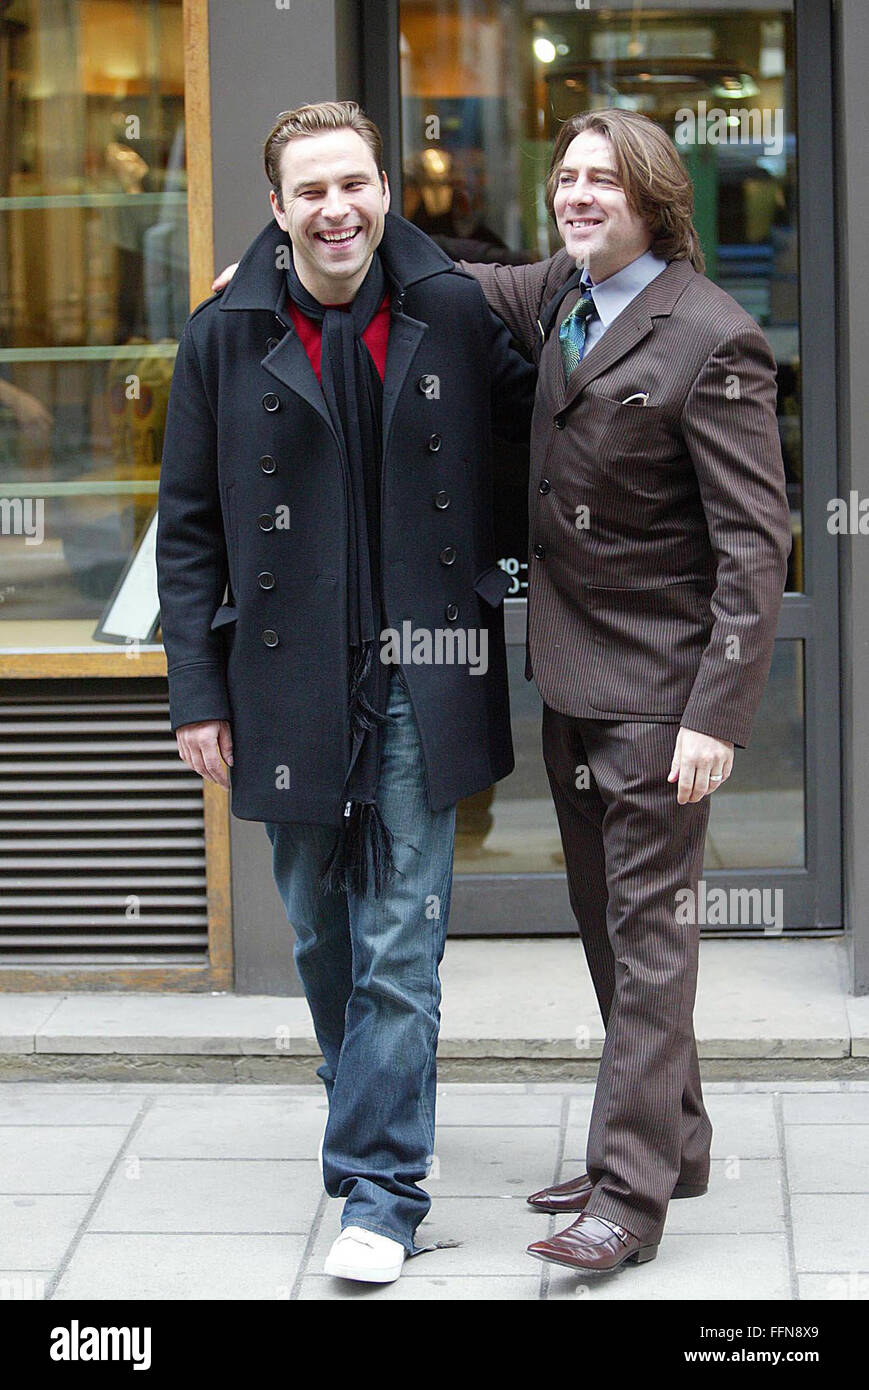 David Walliams und Jonathan Ross Beule ineinander in Savile Row, Mens, Schneiderei, 4 Bilder (Kredit Bild © Jack Ludlam) Stockfoto